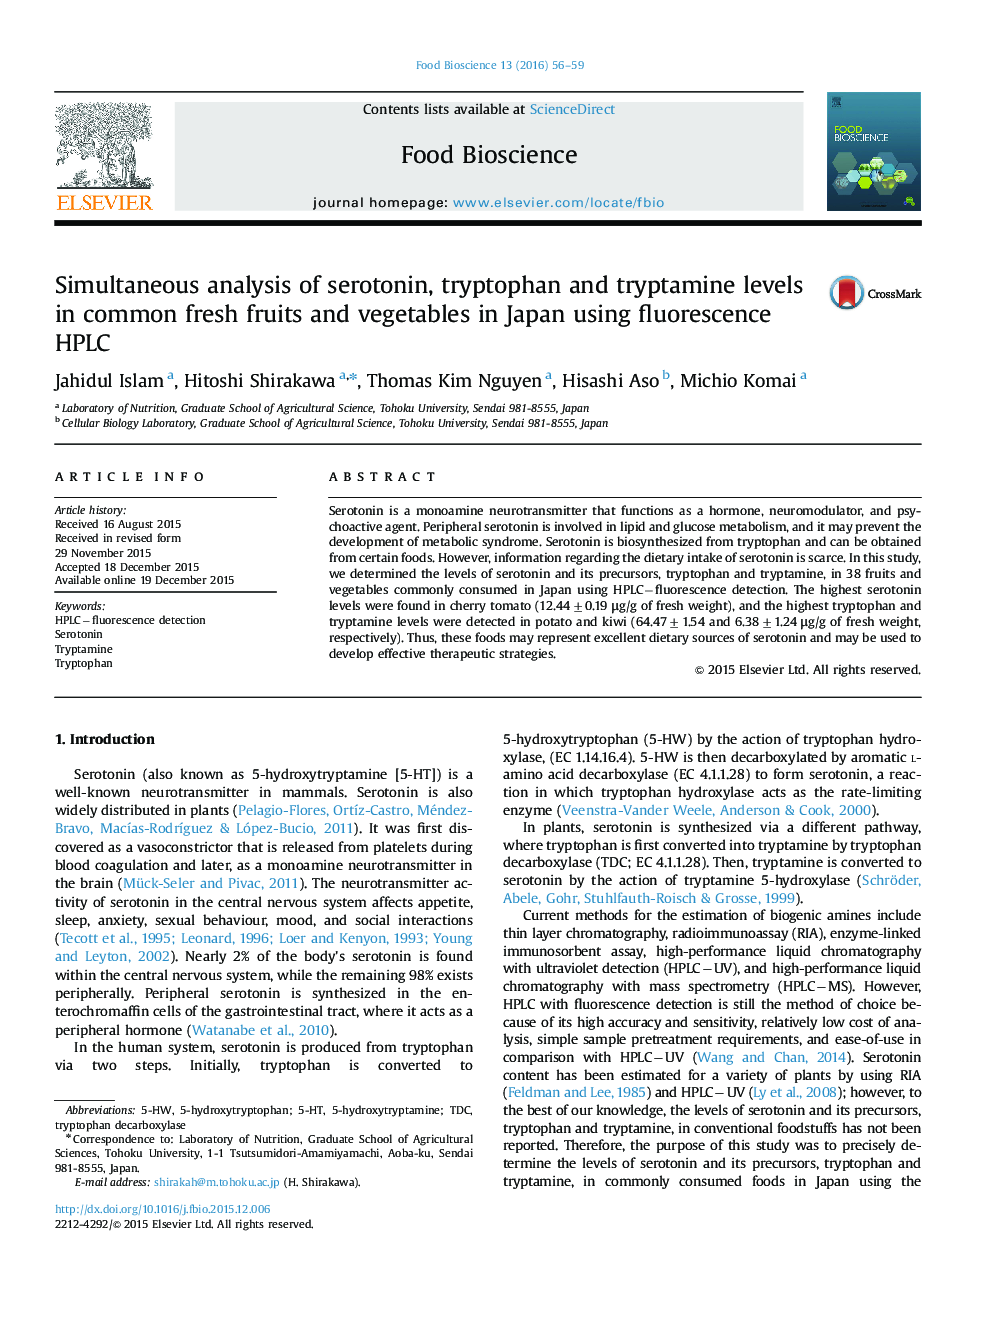 تجزیه و تحلیل همزمان سطوح سروتونین، تریپتوفان و تریپتامین در میوه ها و سبزیجات تازه در ژاپن با استفاده از HPLC فلورسانس